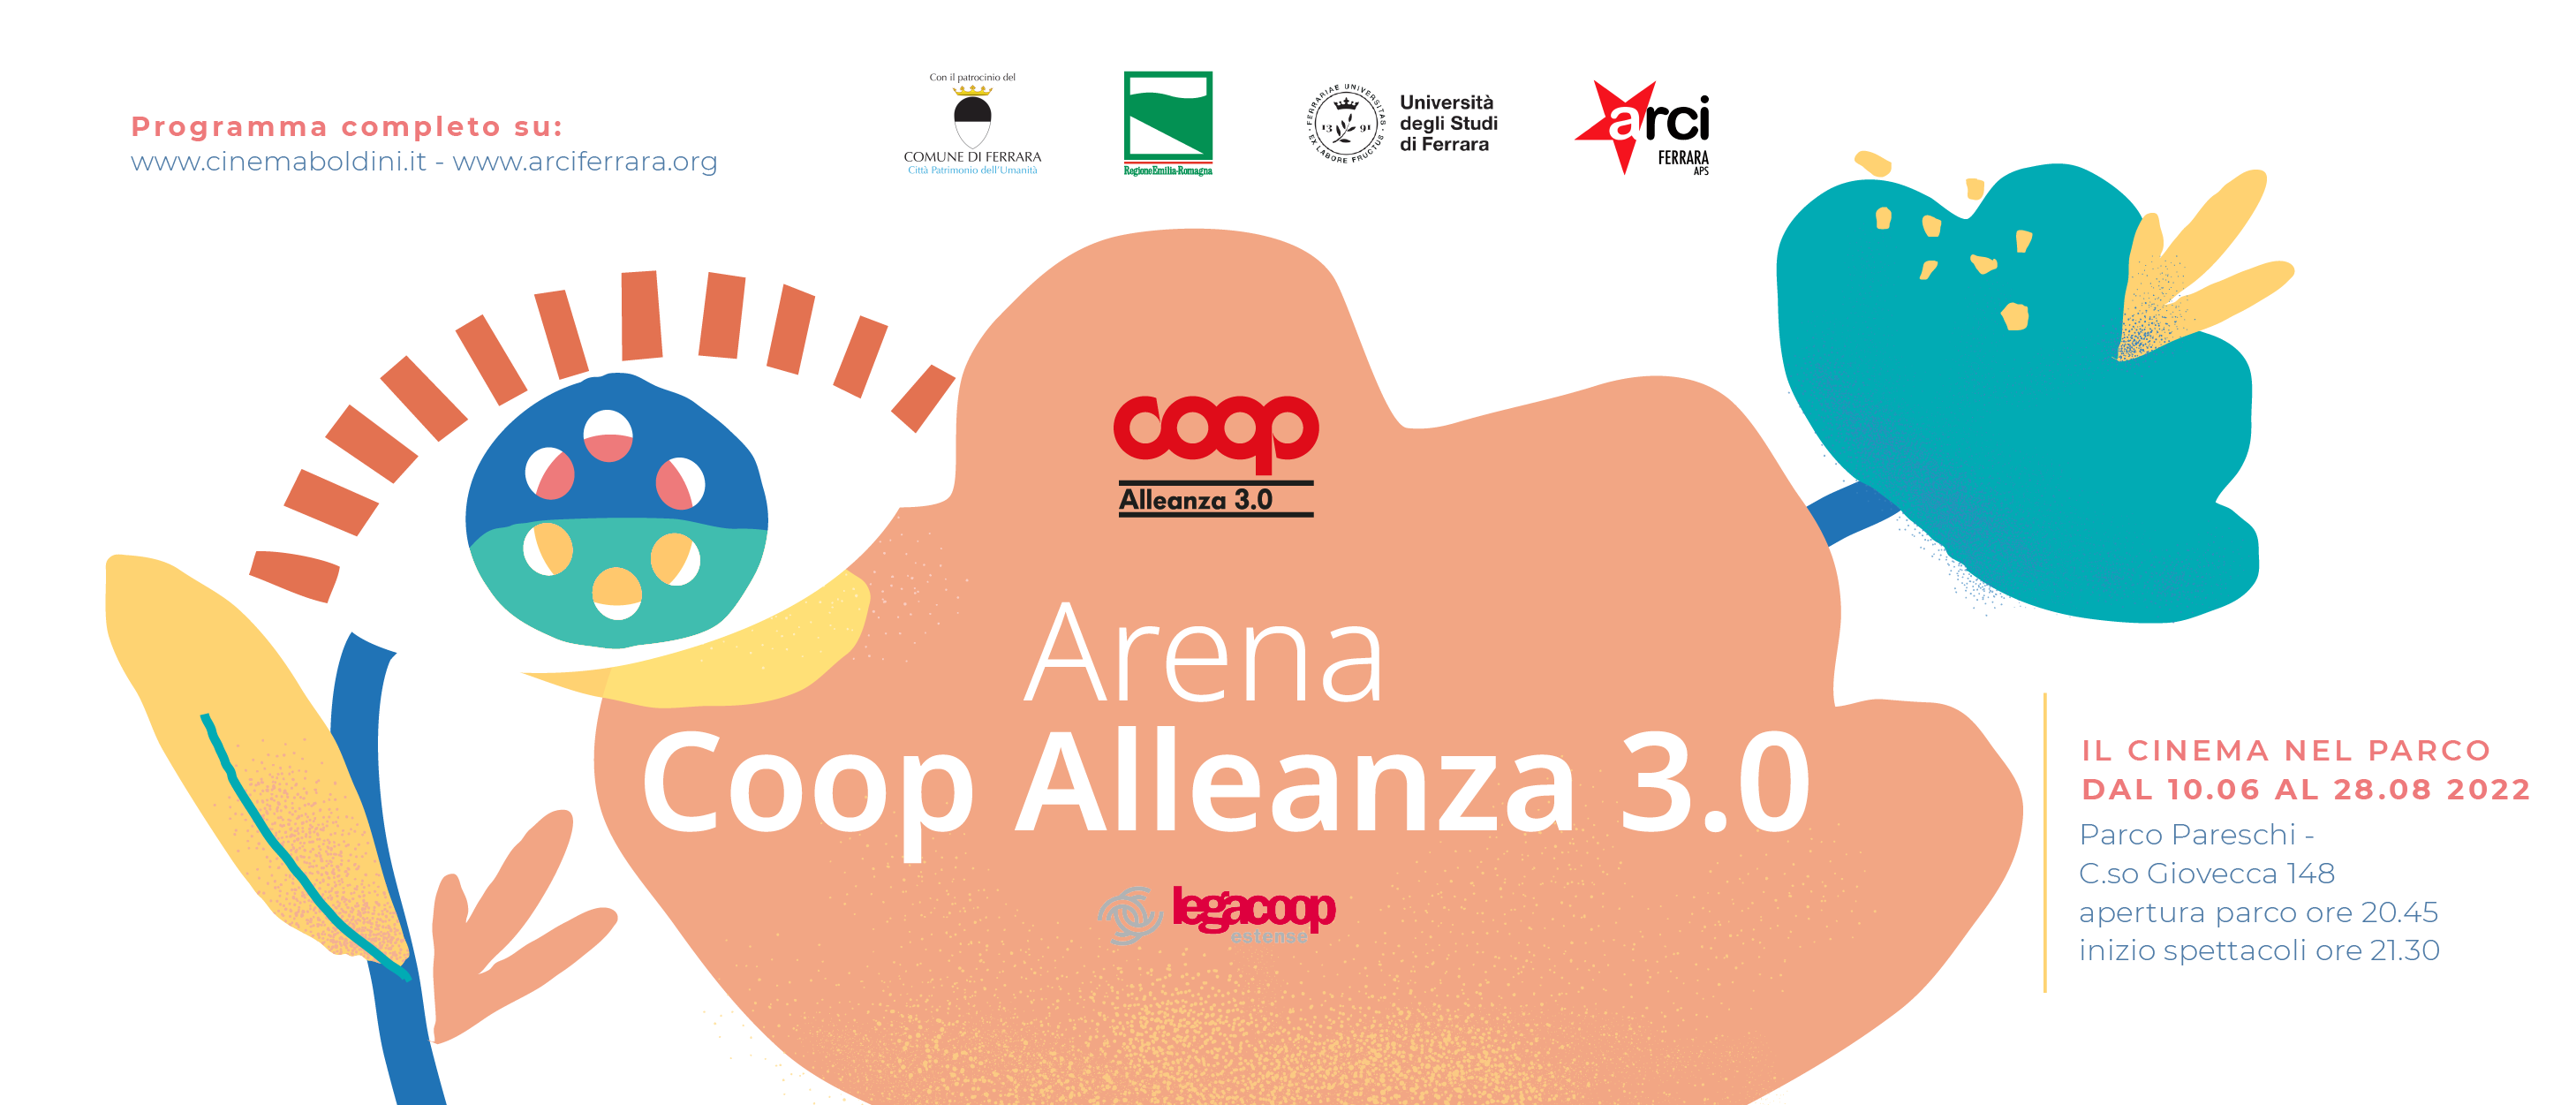 Arena Coop Alleanza 3.0: torna il cinema estivo di Arci grazie al sostegno del mondo cooperativo